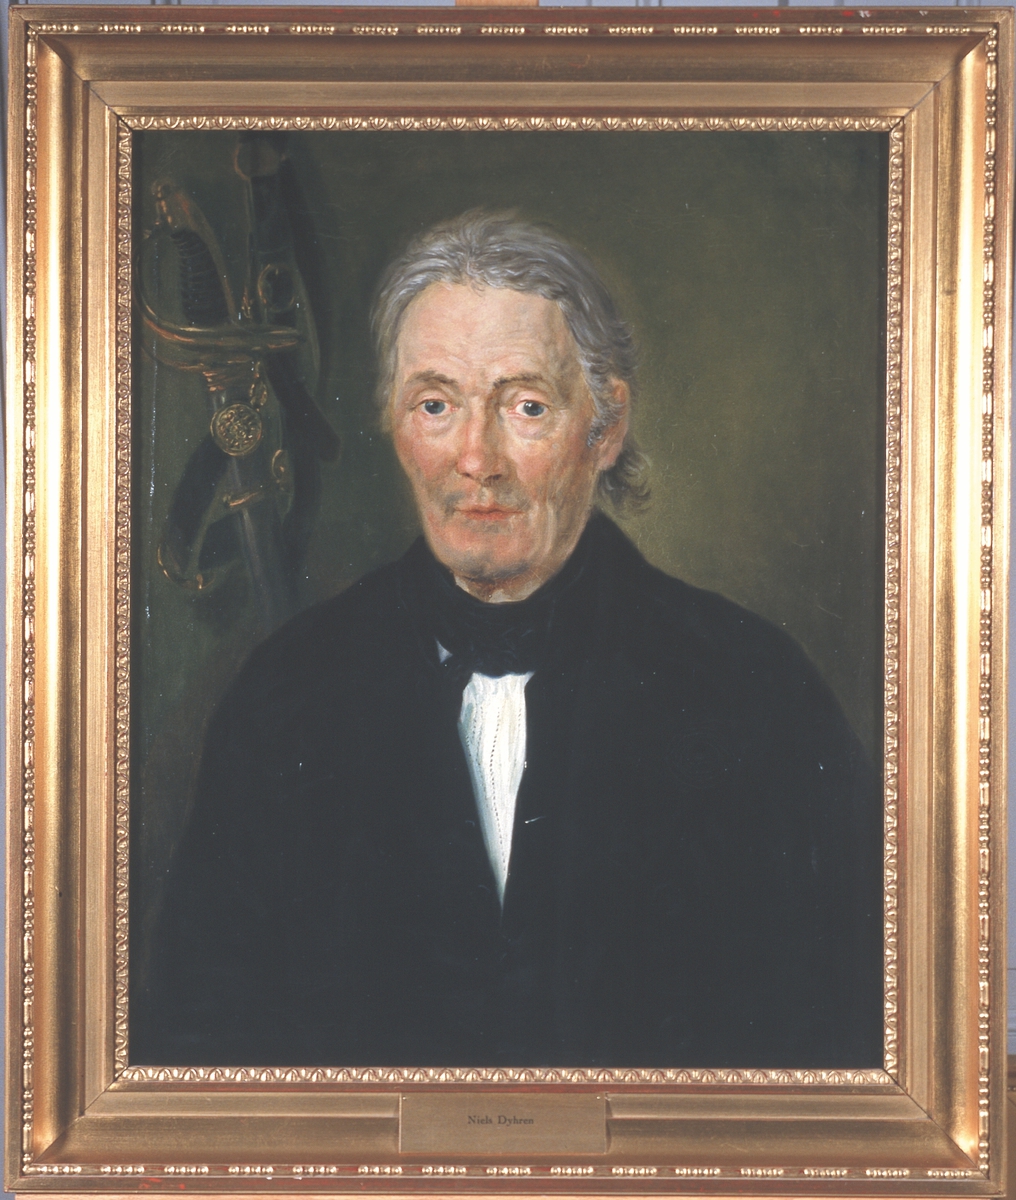 Portrett av Niels Dyhren. Mørk drakt, hvit skjorte, svart halsbind. Kårde i bakgrunnen.